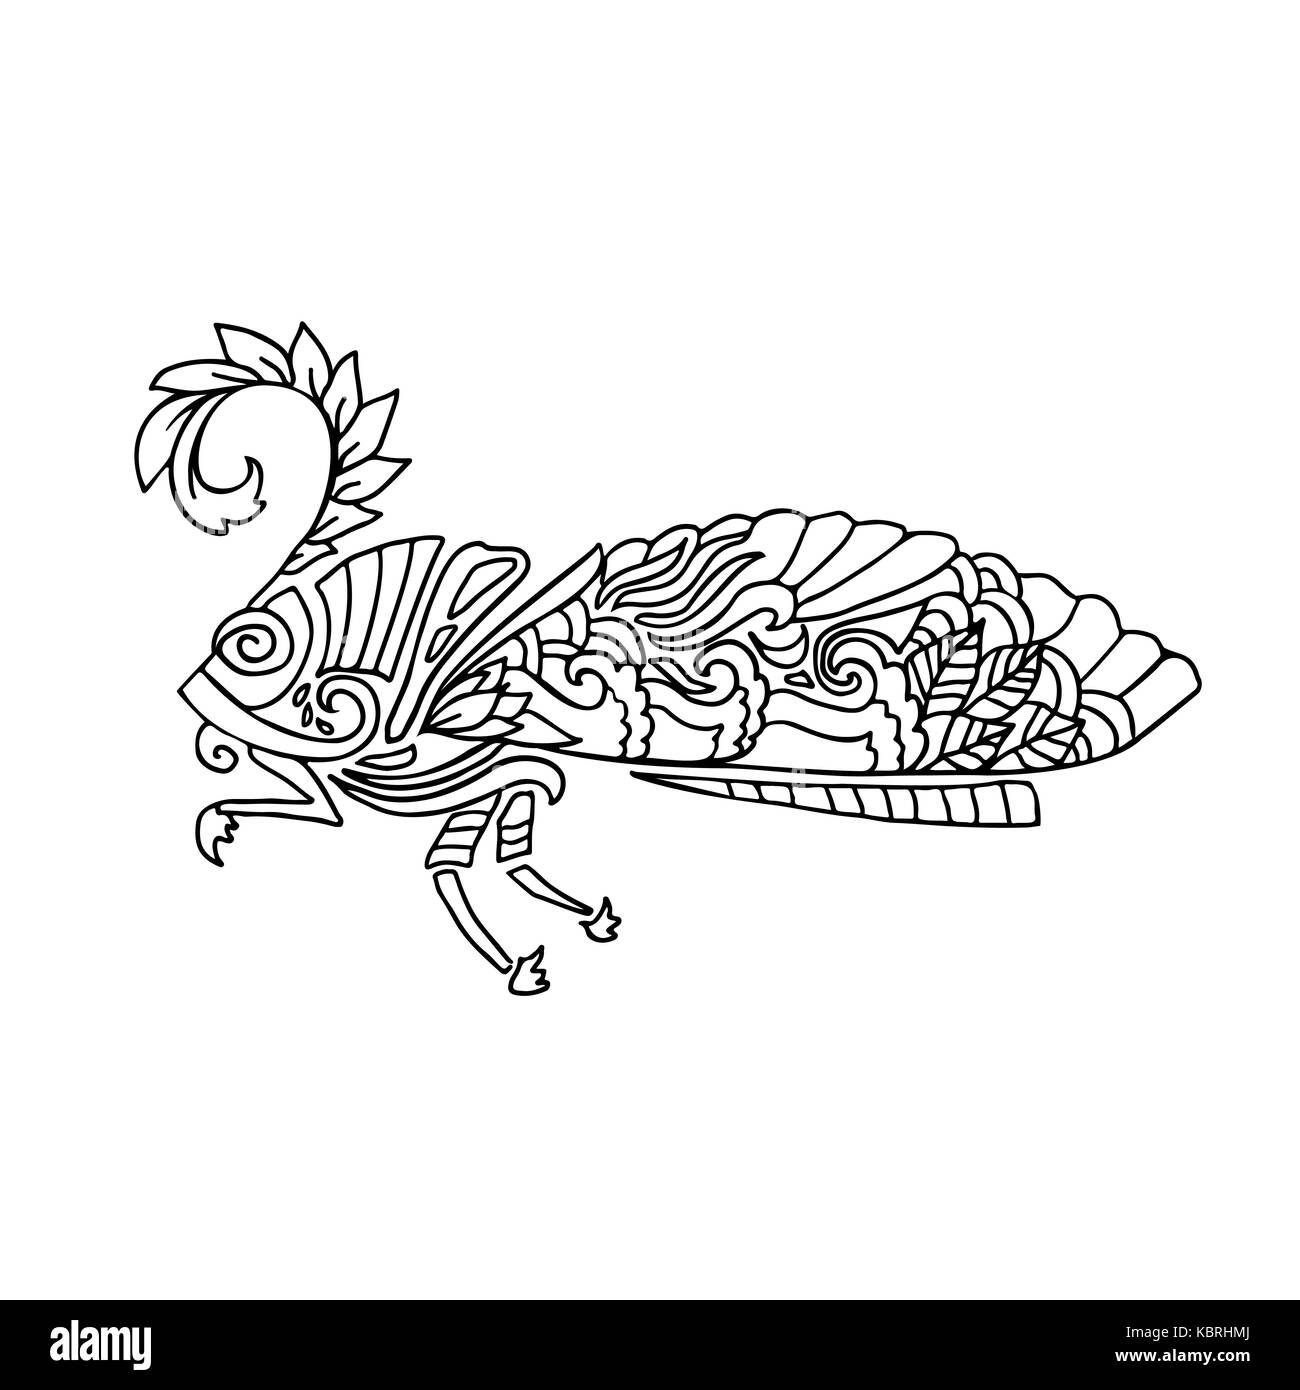 Schwarz und wite Motte mit ethnischen floralen Ornamenten für Erwachsene Malbuch. Zentagle Muster. doodle Abbildung. Nacht - fliegen Motten. Stockfoto